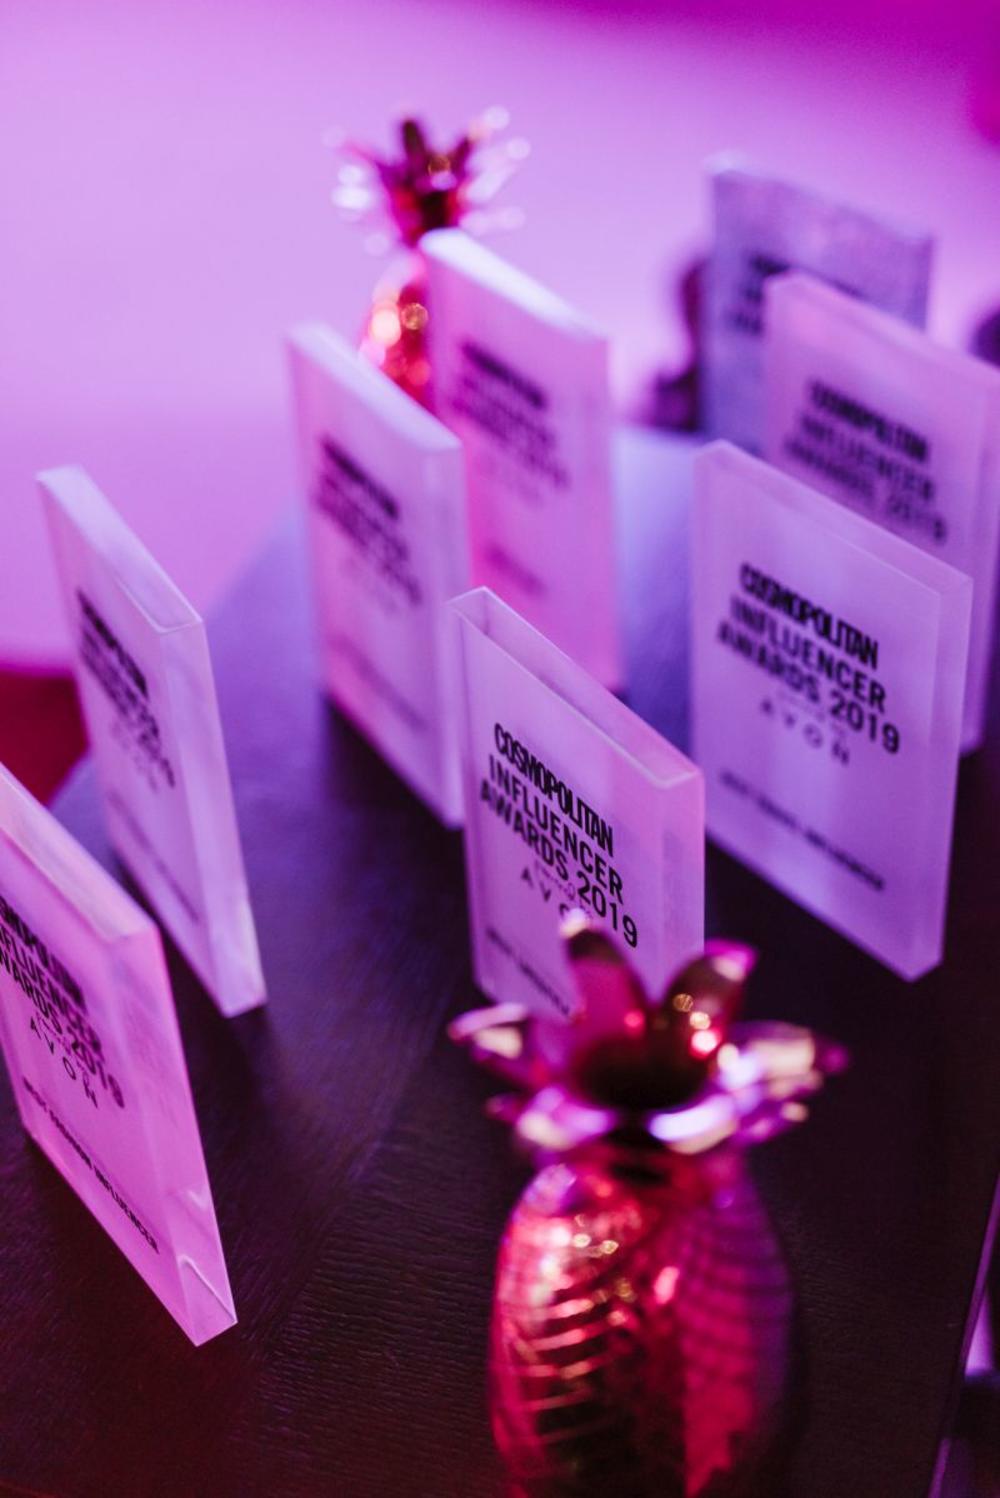 <p>Prvi Cosmopolitan Influencer Awards powered by Avon imao je veliko finale u restoranu Sakura kada su proglašeni pobednici u svih sedam kategorija, ali i objavljeno ko je Best of the best</p>